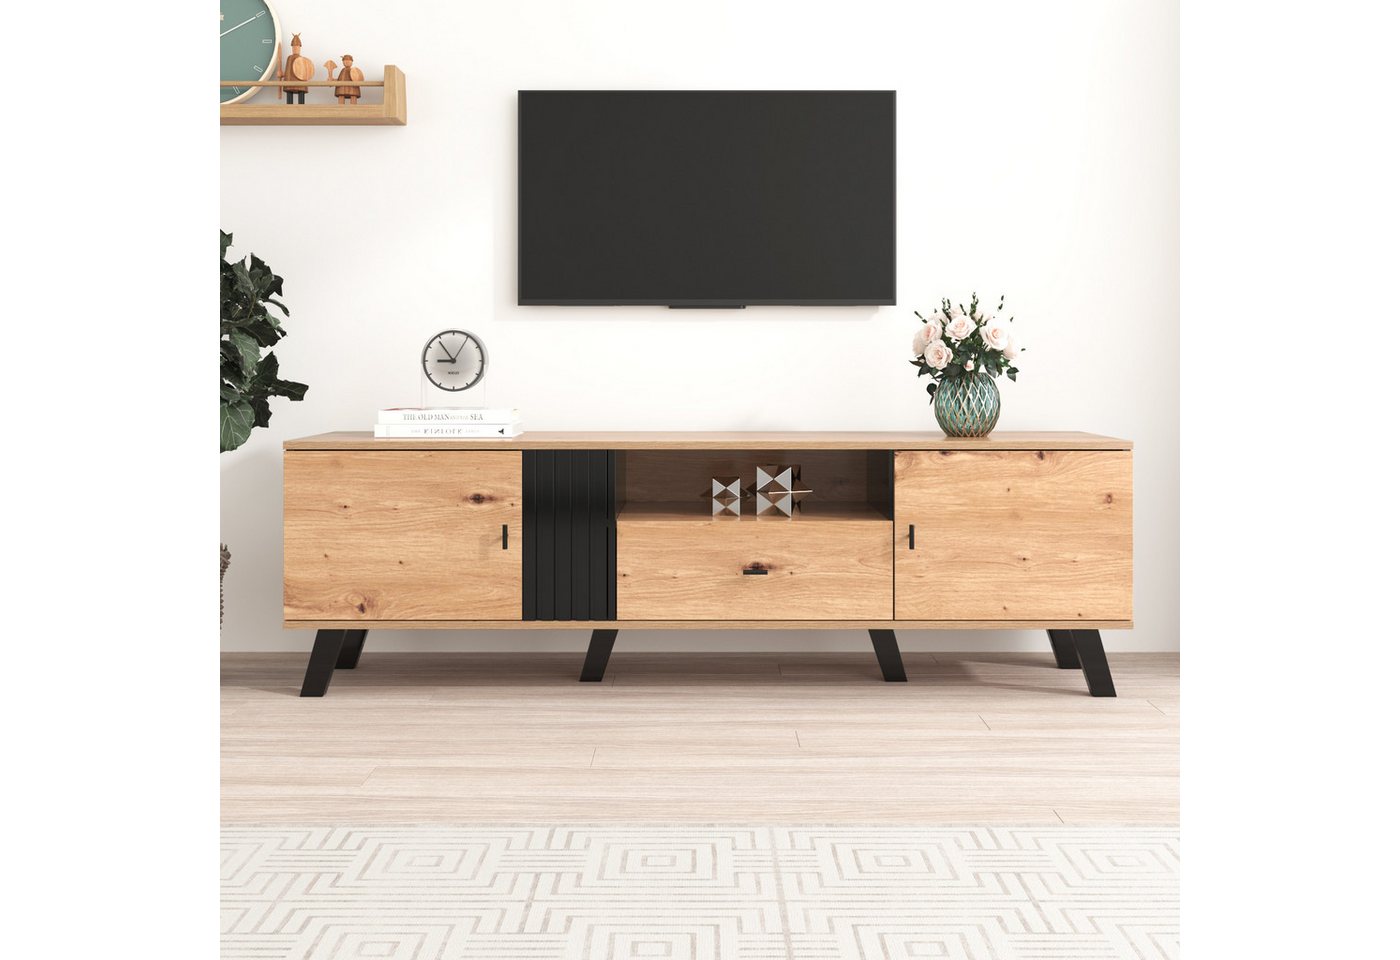 MODFU Lowboard TV-Schrank mit Holz- und Schwarzdesign (Vielfältige Aufbewahrungsfunktionen, einzigartiges Erscheinungsbild), TV-Schrank, mit 2 Türen und 1 Schublade von MODFU